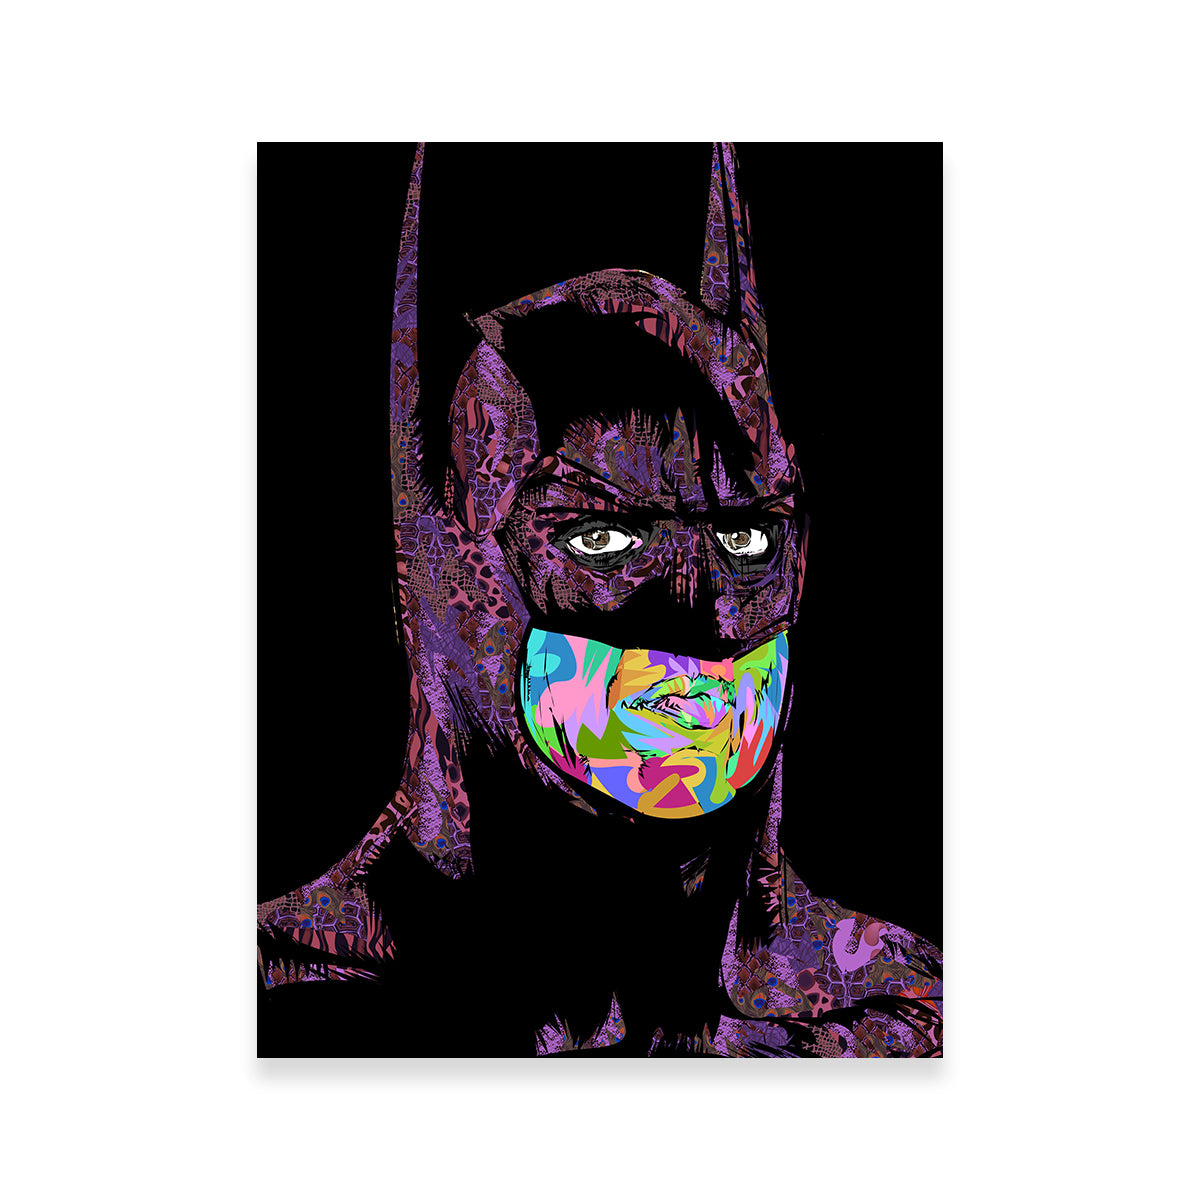 Batman Color